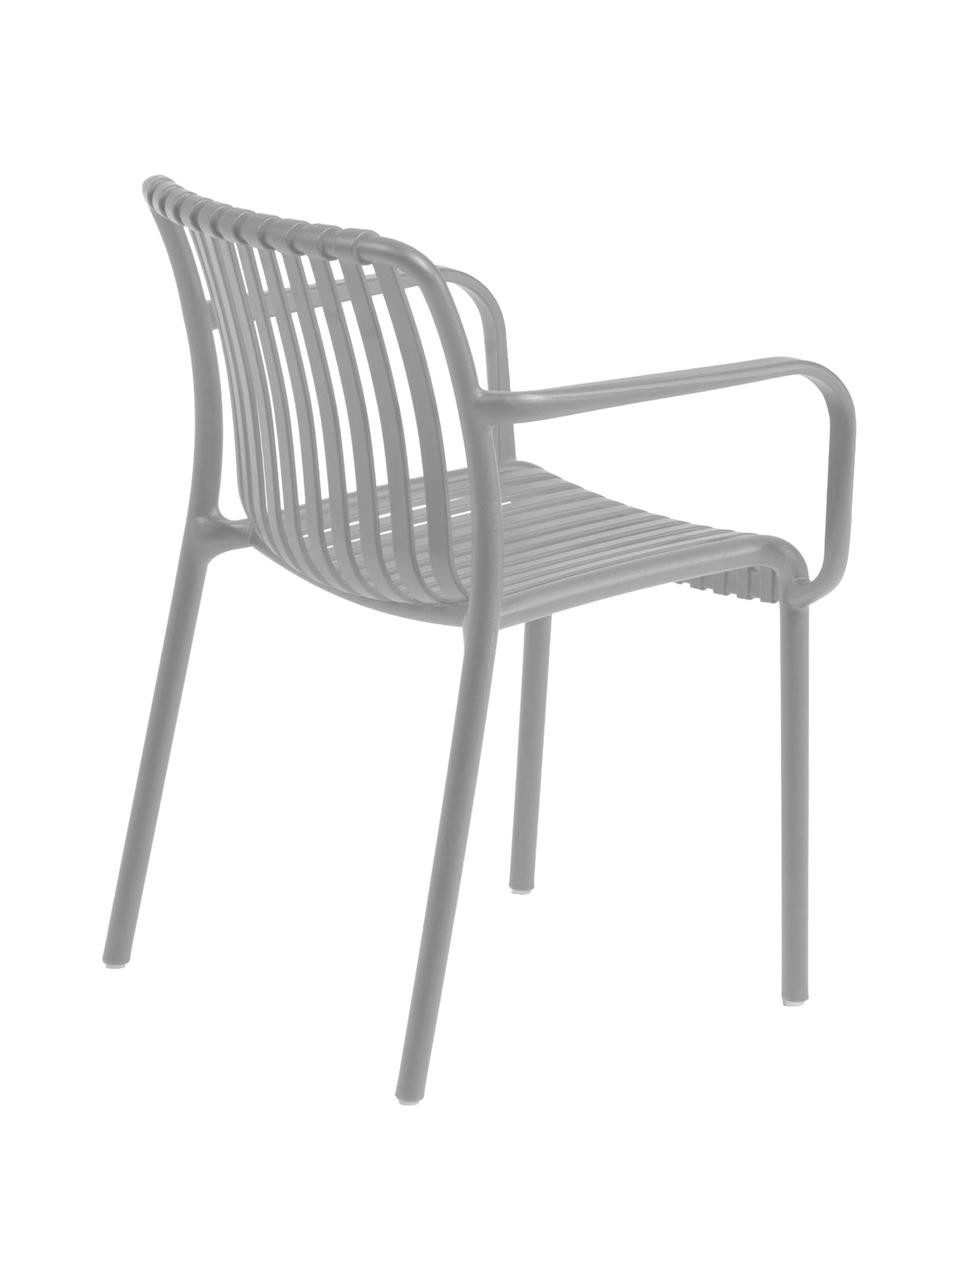 Krzesło ogrodowe z podłokietnikami Isabellini, Tworzywo sztuczne, Jasny szary, S 54 x G 49 cm